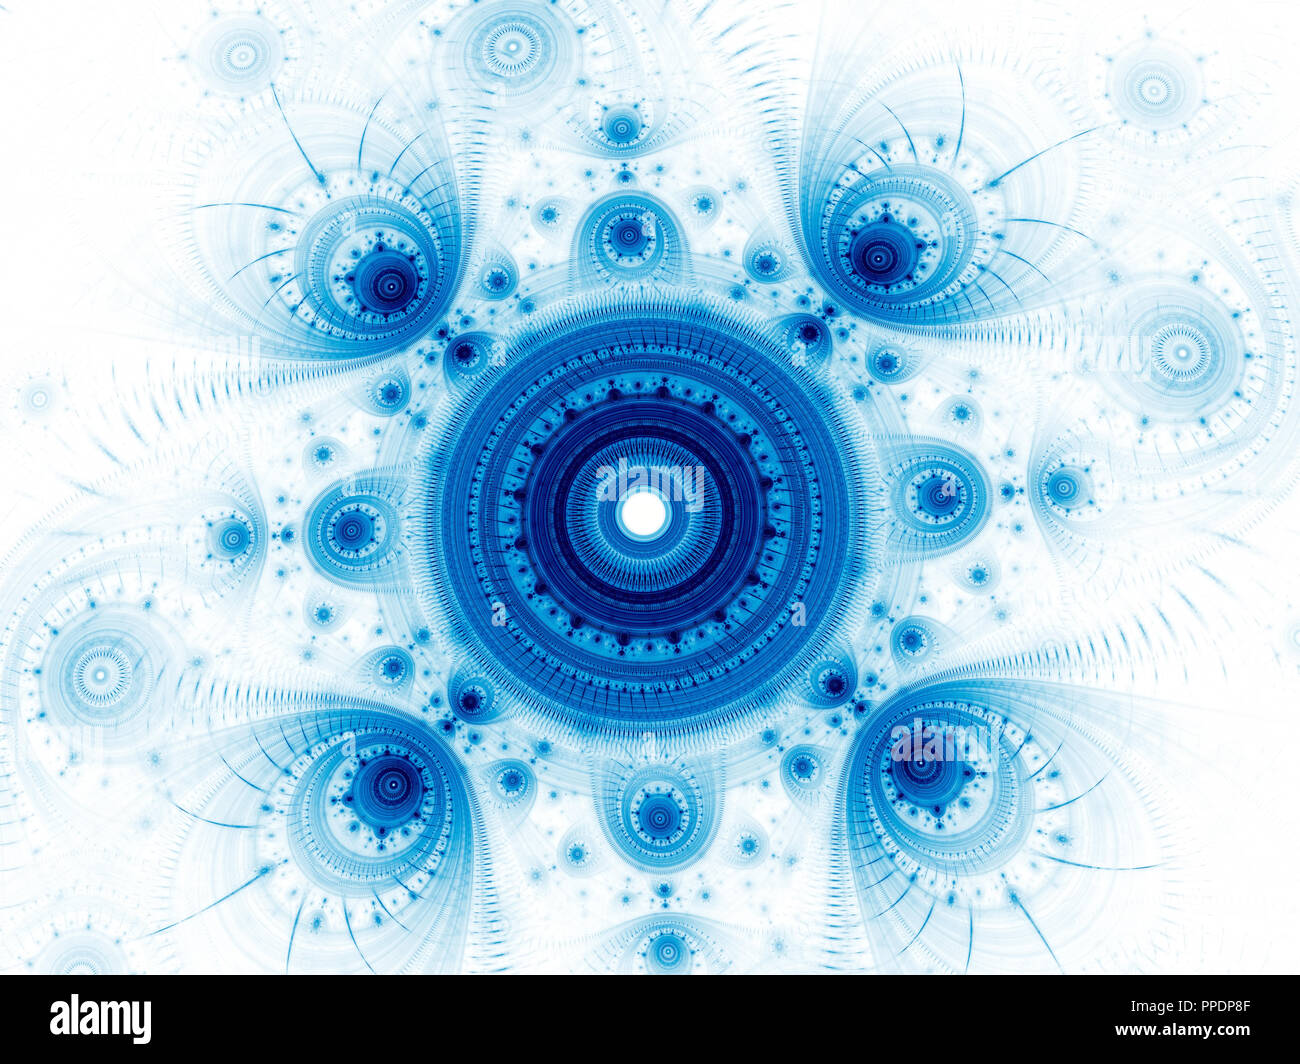 Fractal mandala - abstract esoteric digitally generated image Stock Photo